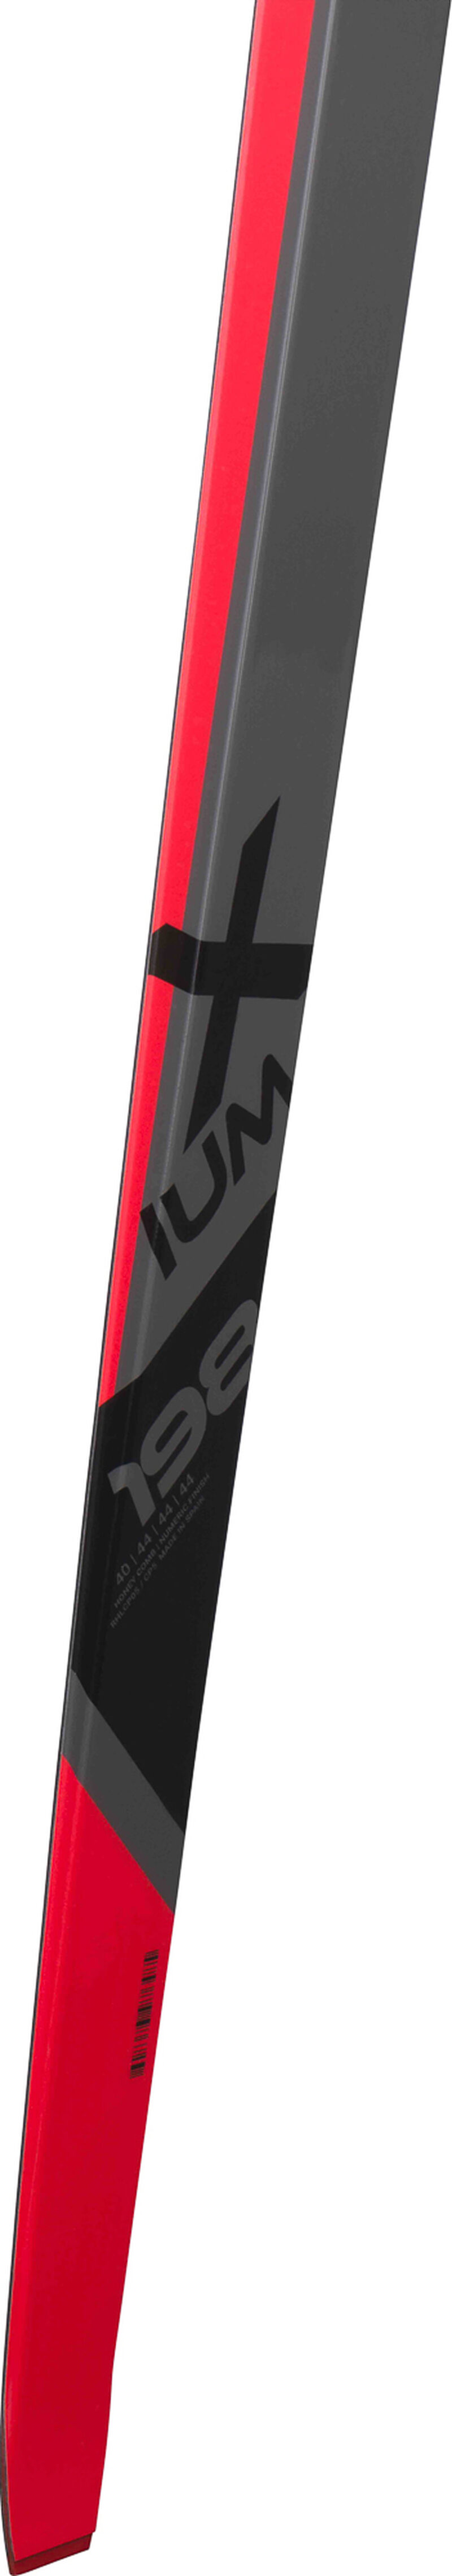 Unisex Nordic Skis X-Ium R-Skin STIFF